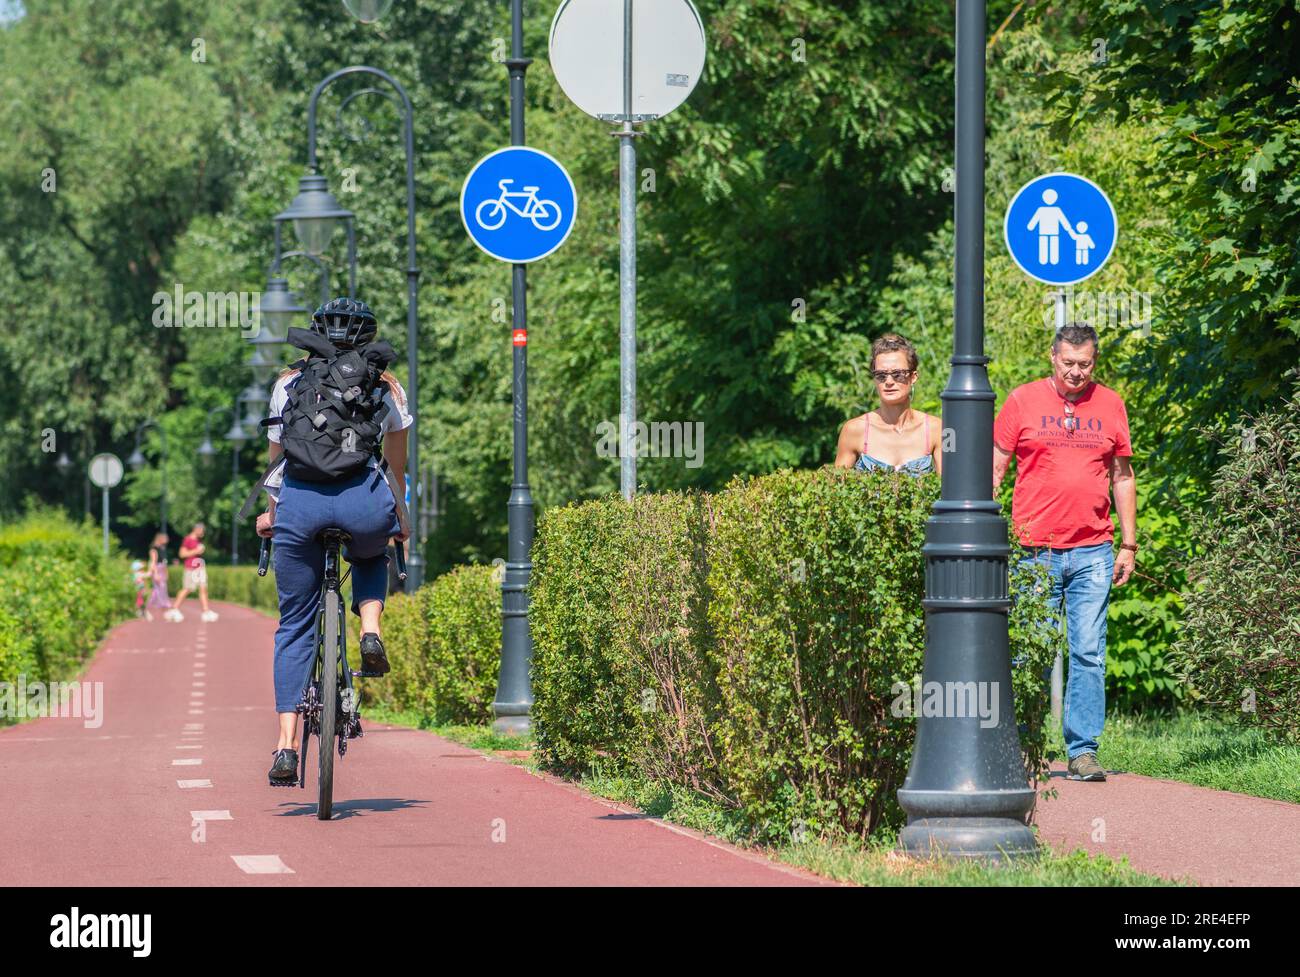 Fille avec casque et sac à dos à vélo sur la route cyclable et couple de piétons marchant sur la passerelle avec panneau bleu ou signal de piste cyclable Banque D'Images